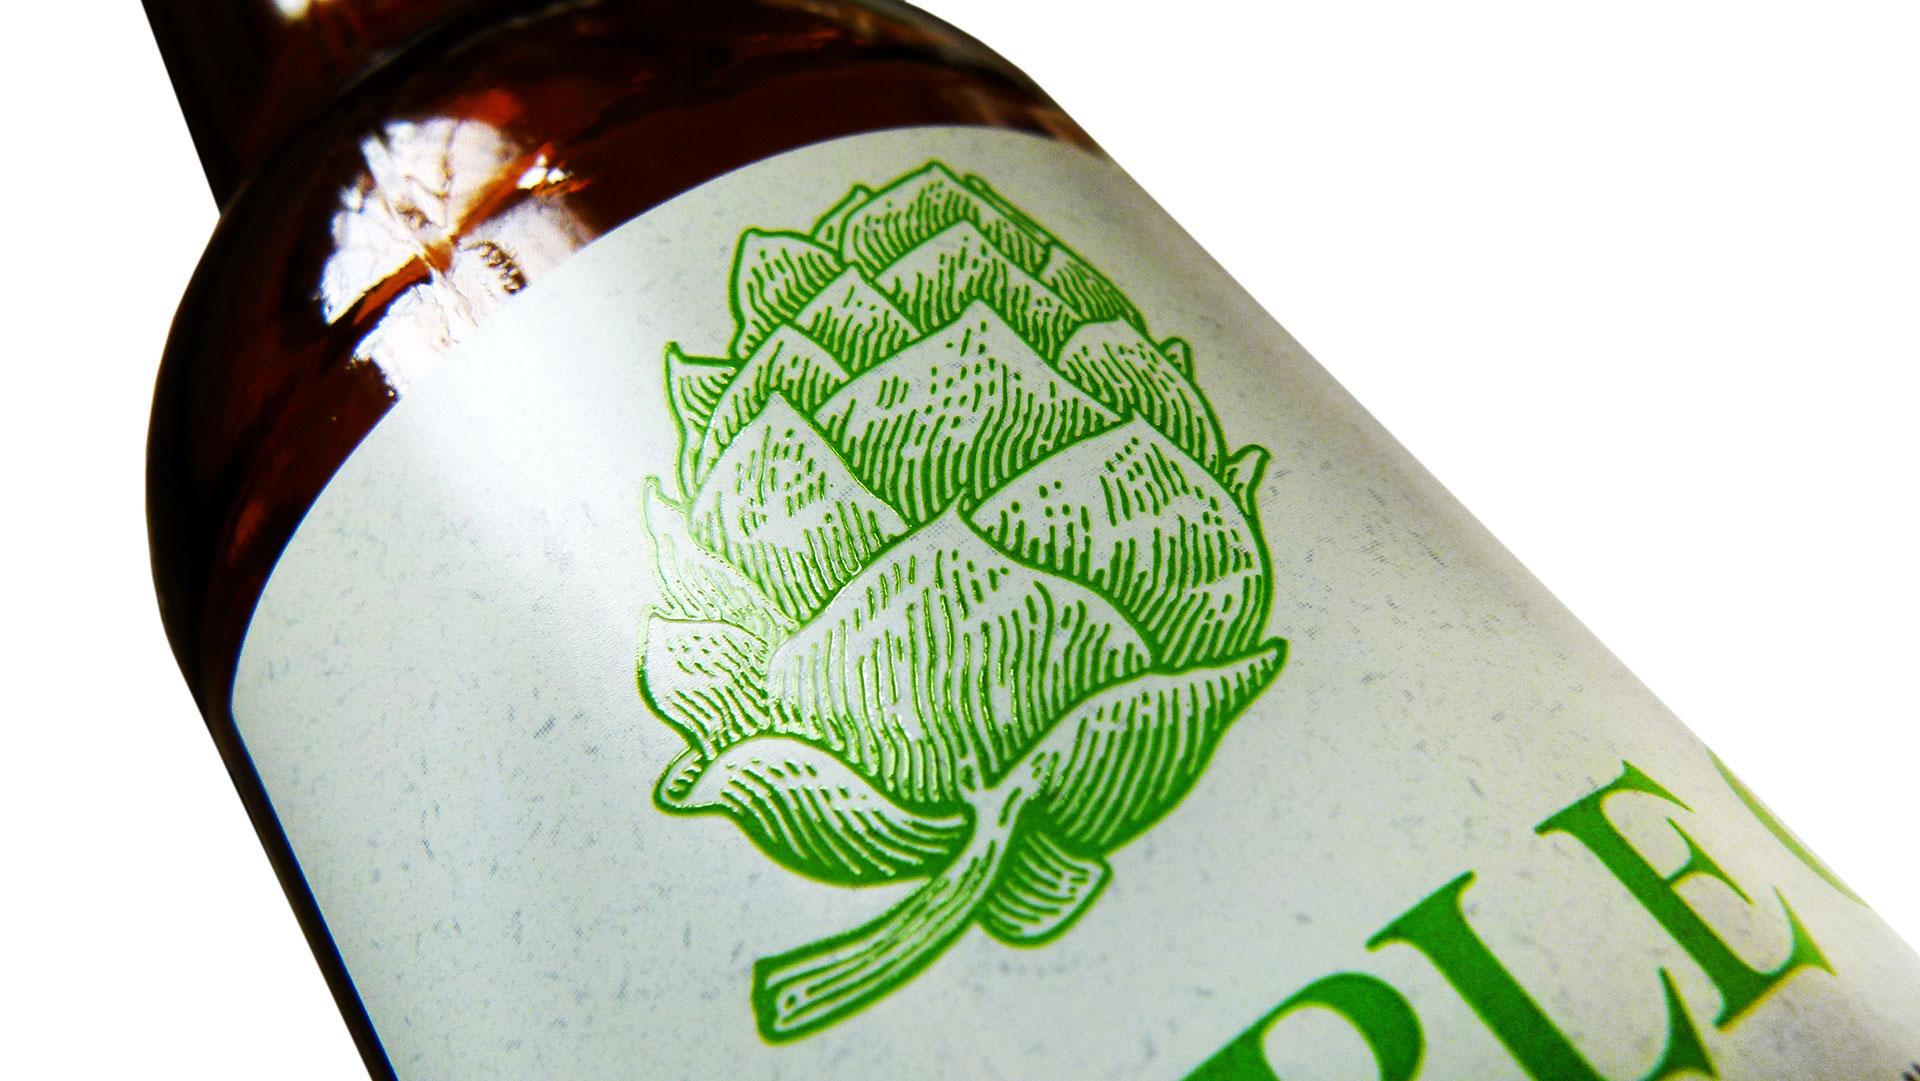 Crafty Dan Beer Labels - PaperSpecs